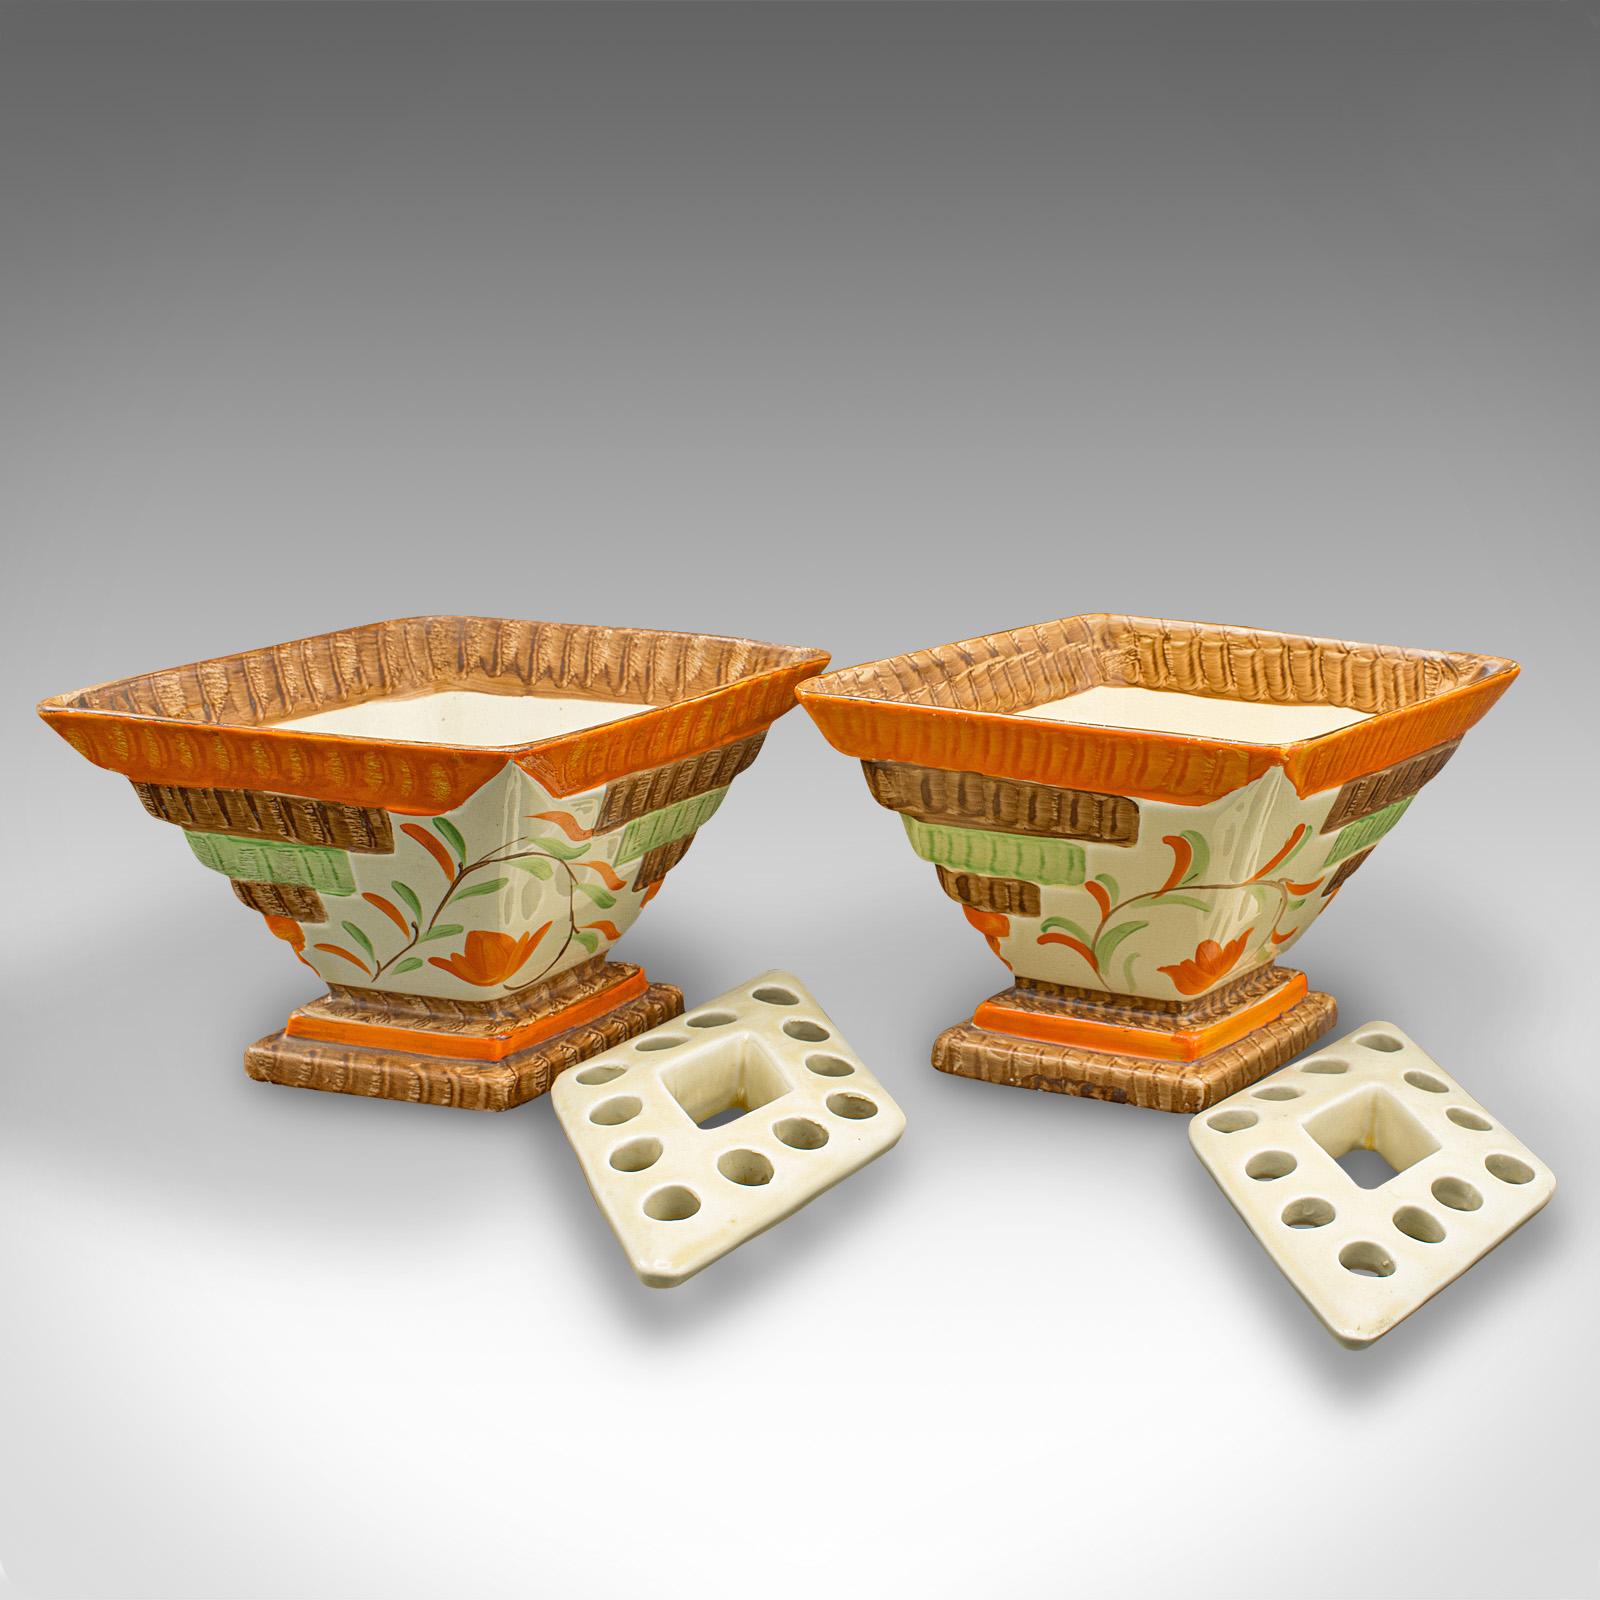 Dies ist ein Paar von Vintage Trockenblumen Vasen. Eine englische, handbemalte, dekorative, rautenförmige Keramikkanne aus der Zeit des Art déco, um 1930.

Faszinierende Form des Diamanten, mit wunderbarer Farbe
Mit wünschenswerter Alterspatina und